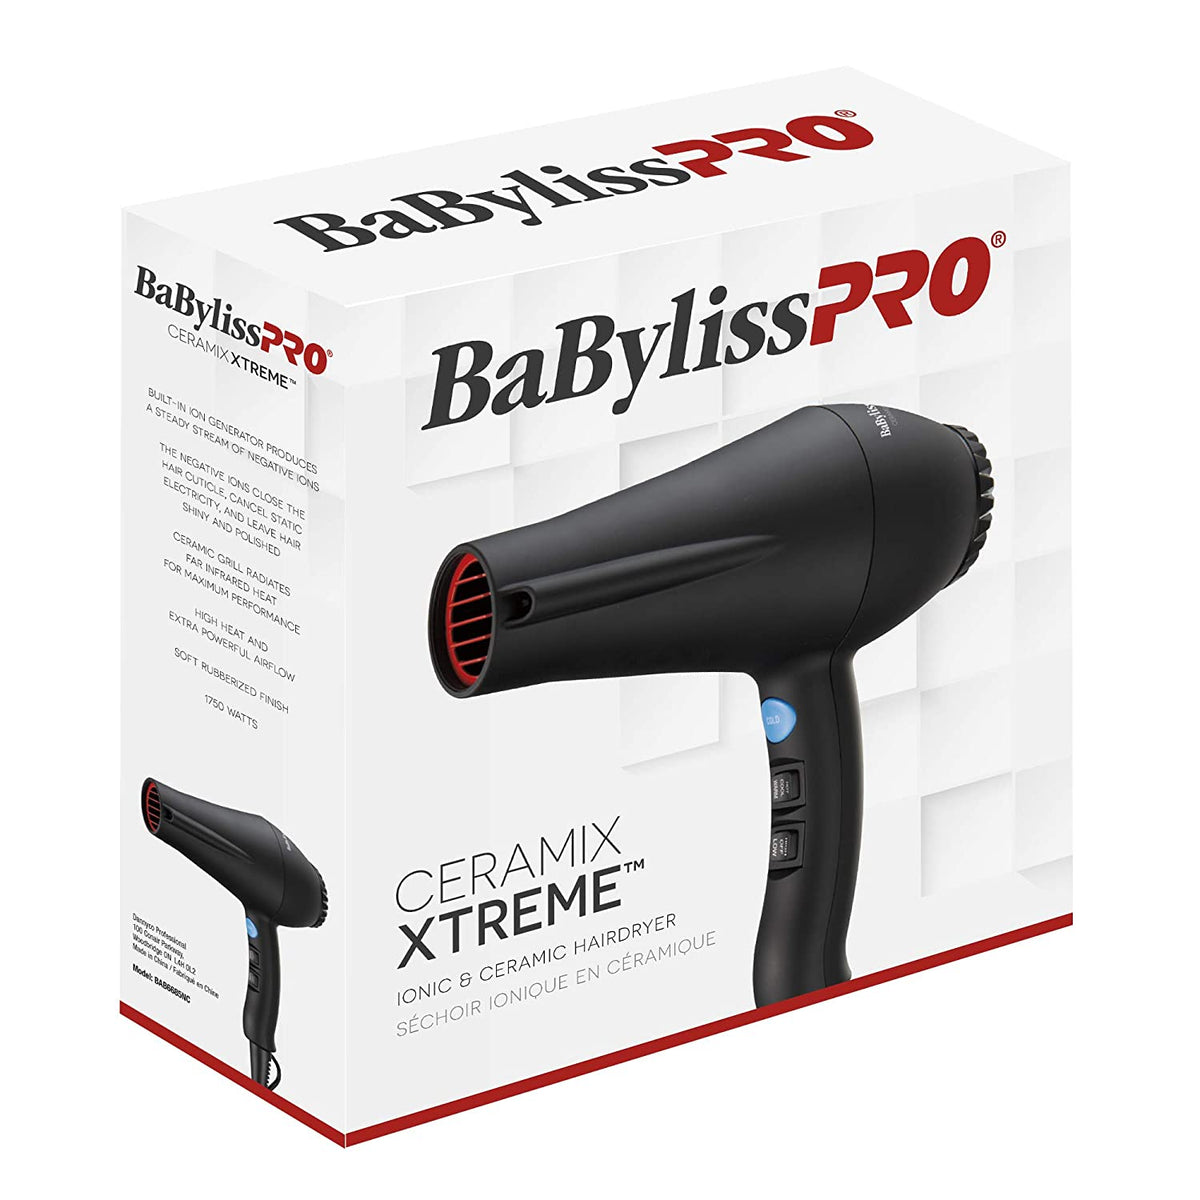 BaBylissPRO Ceramix Xtreme lonic & Ceramic Hairdryer , Black